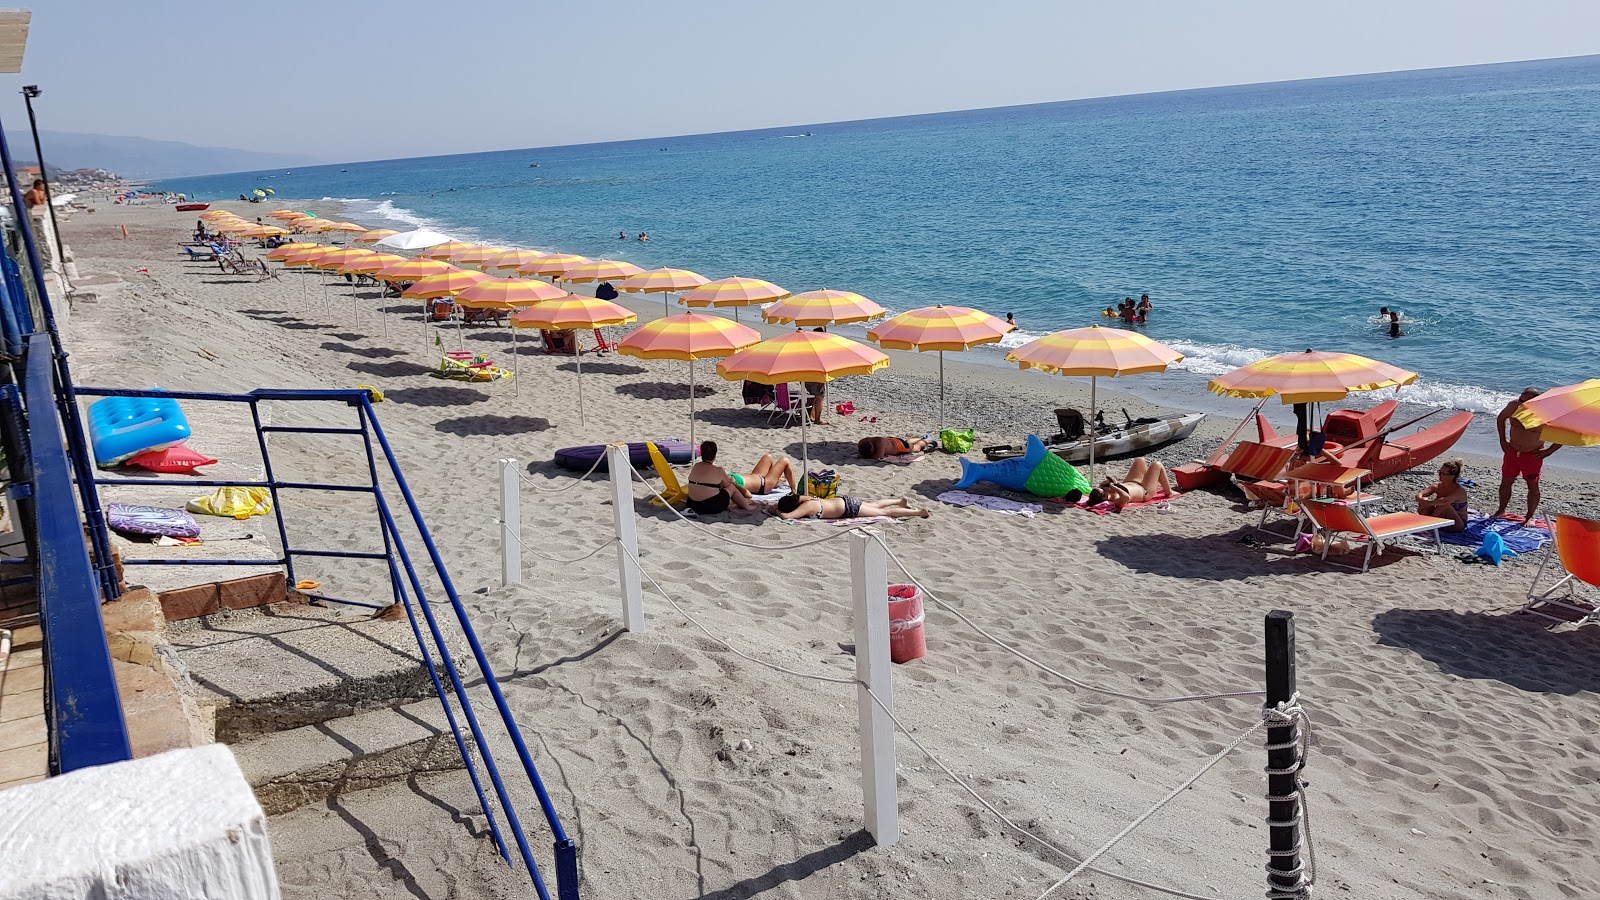 Marina di Fuscaldo beach'in fotoğrafı kısmen temiz temizlik seviyesi ile